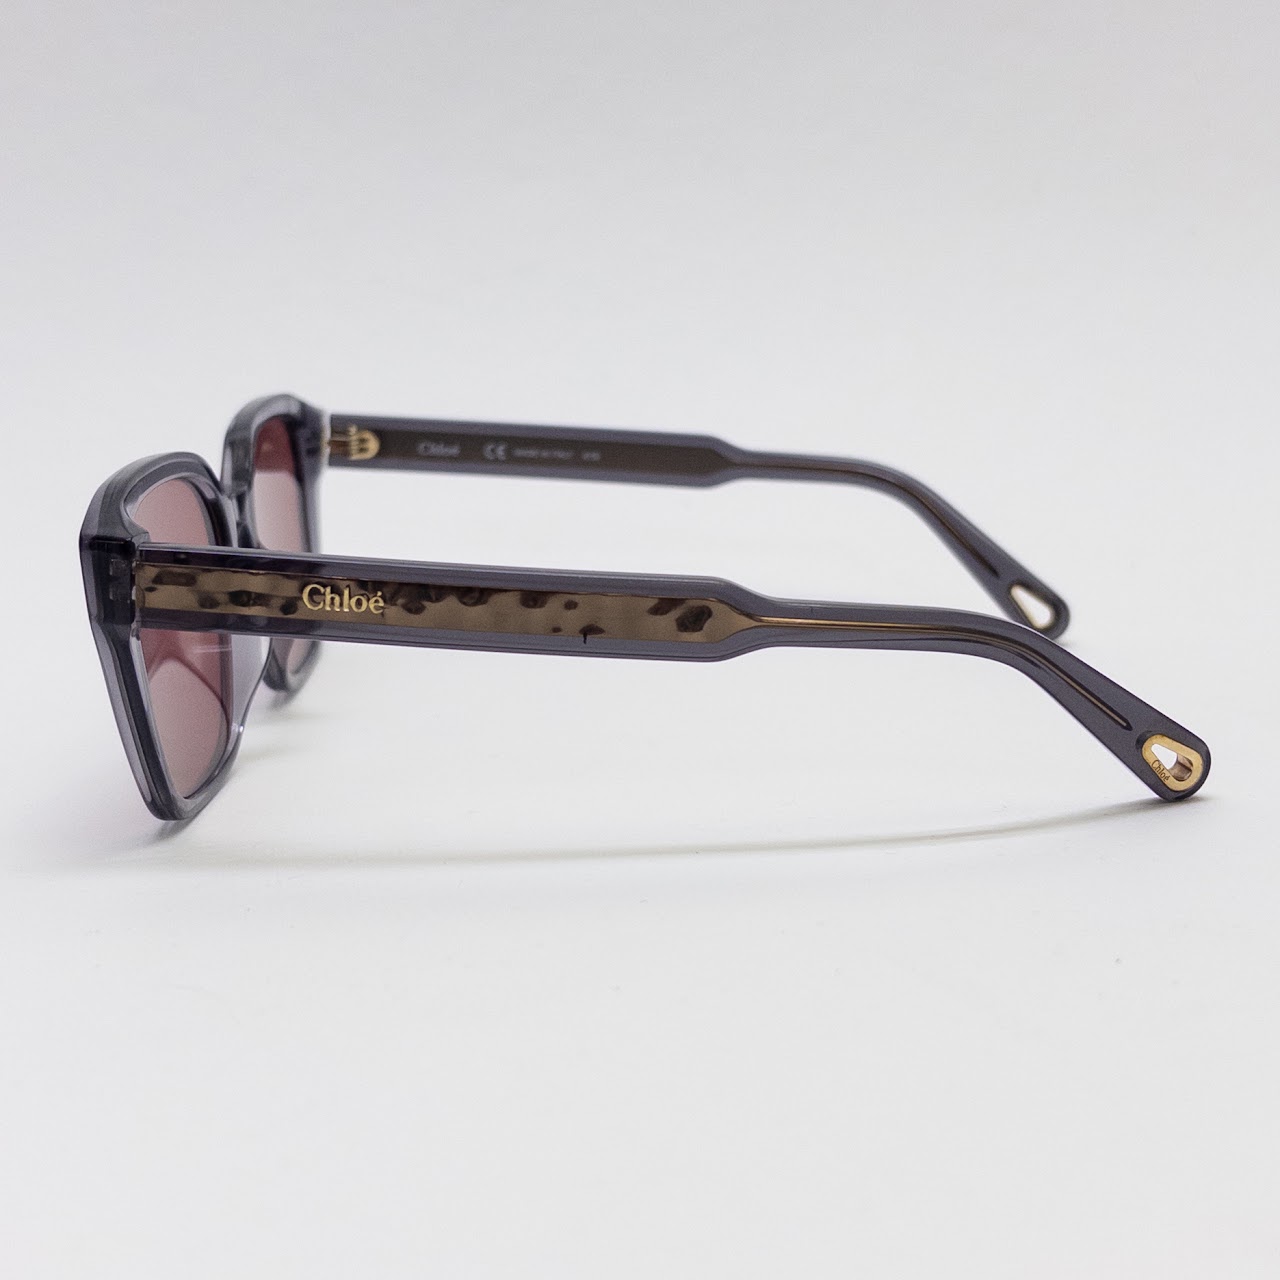 Chloé Square Frame Sunglasses